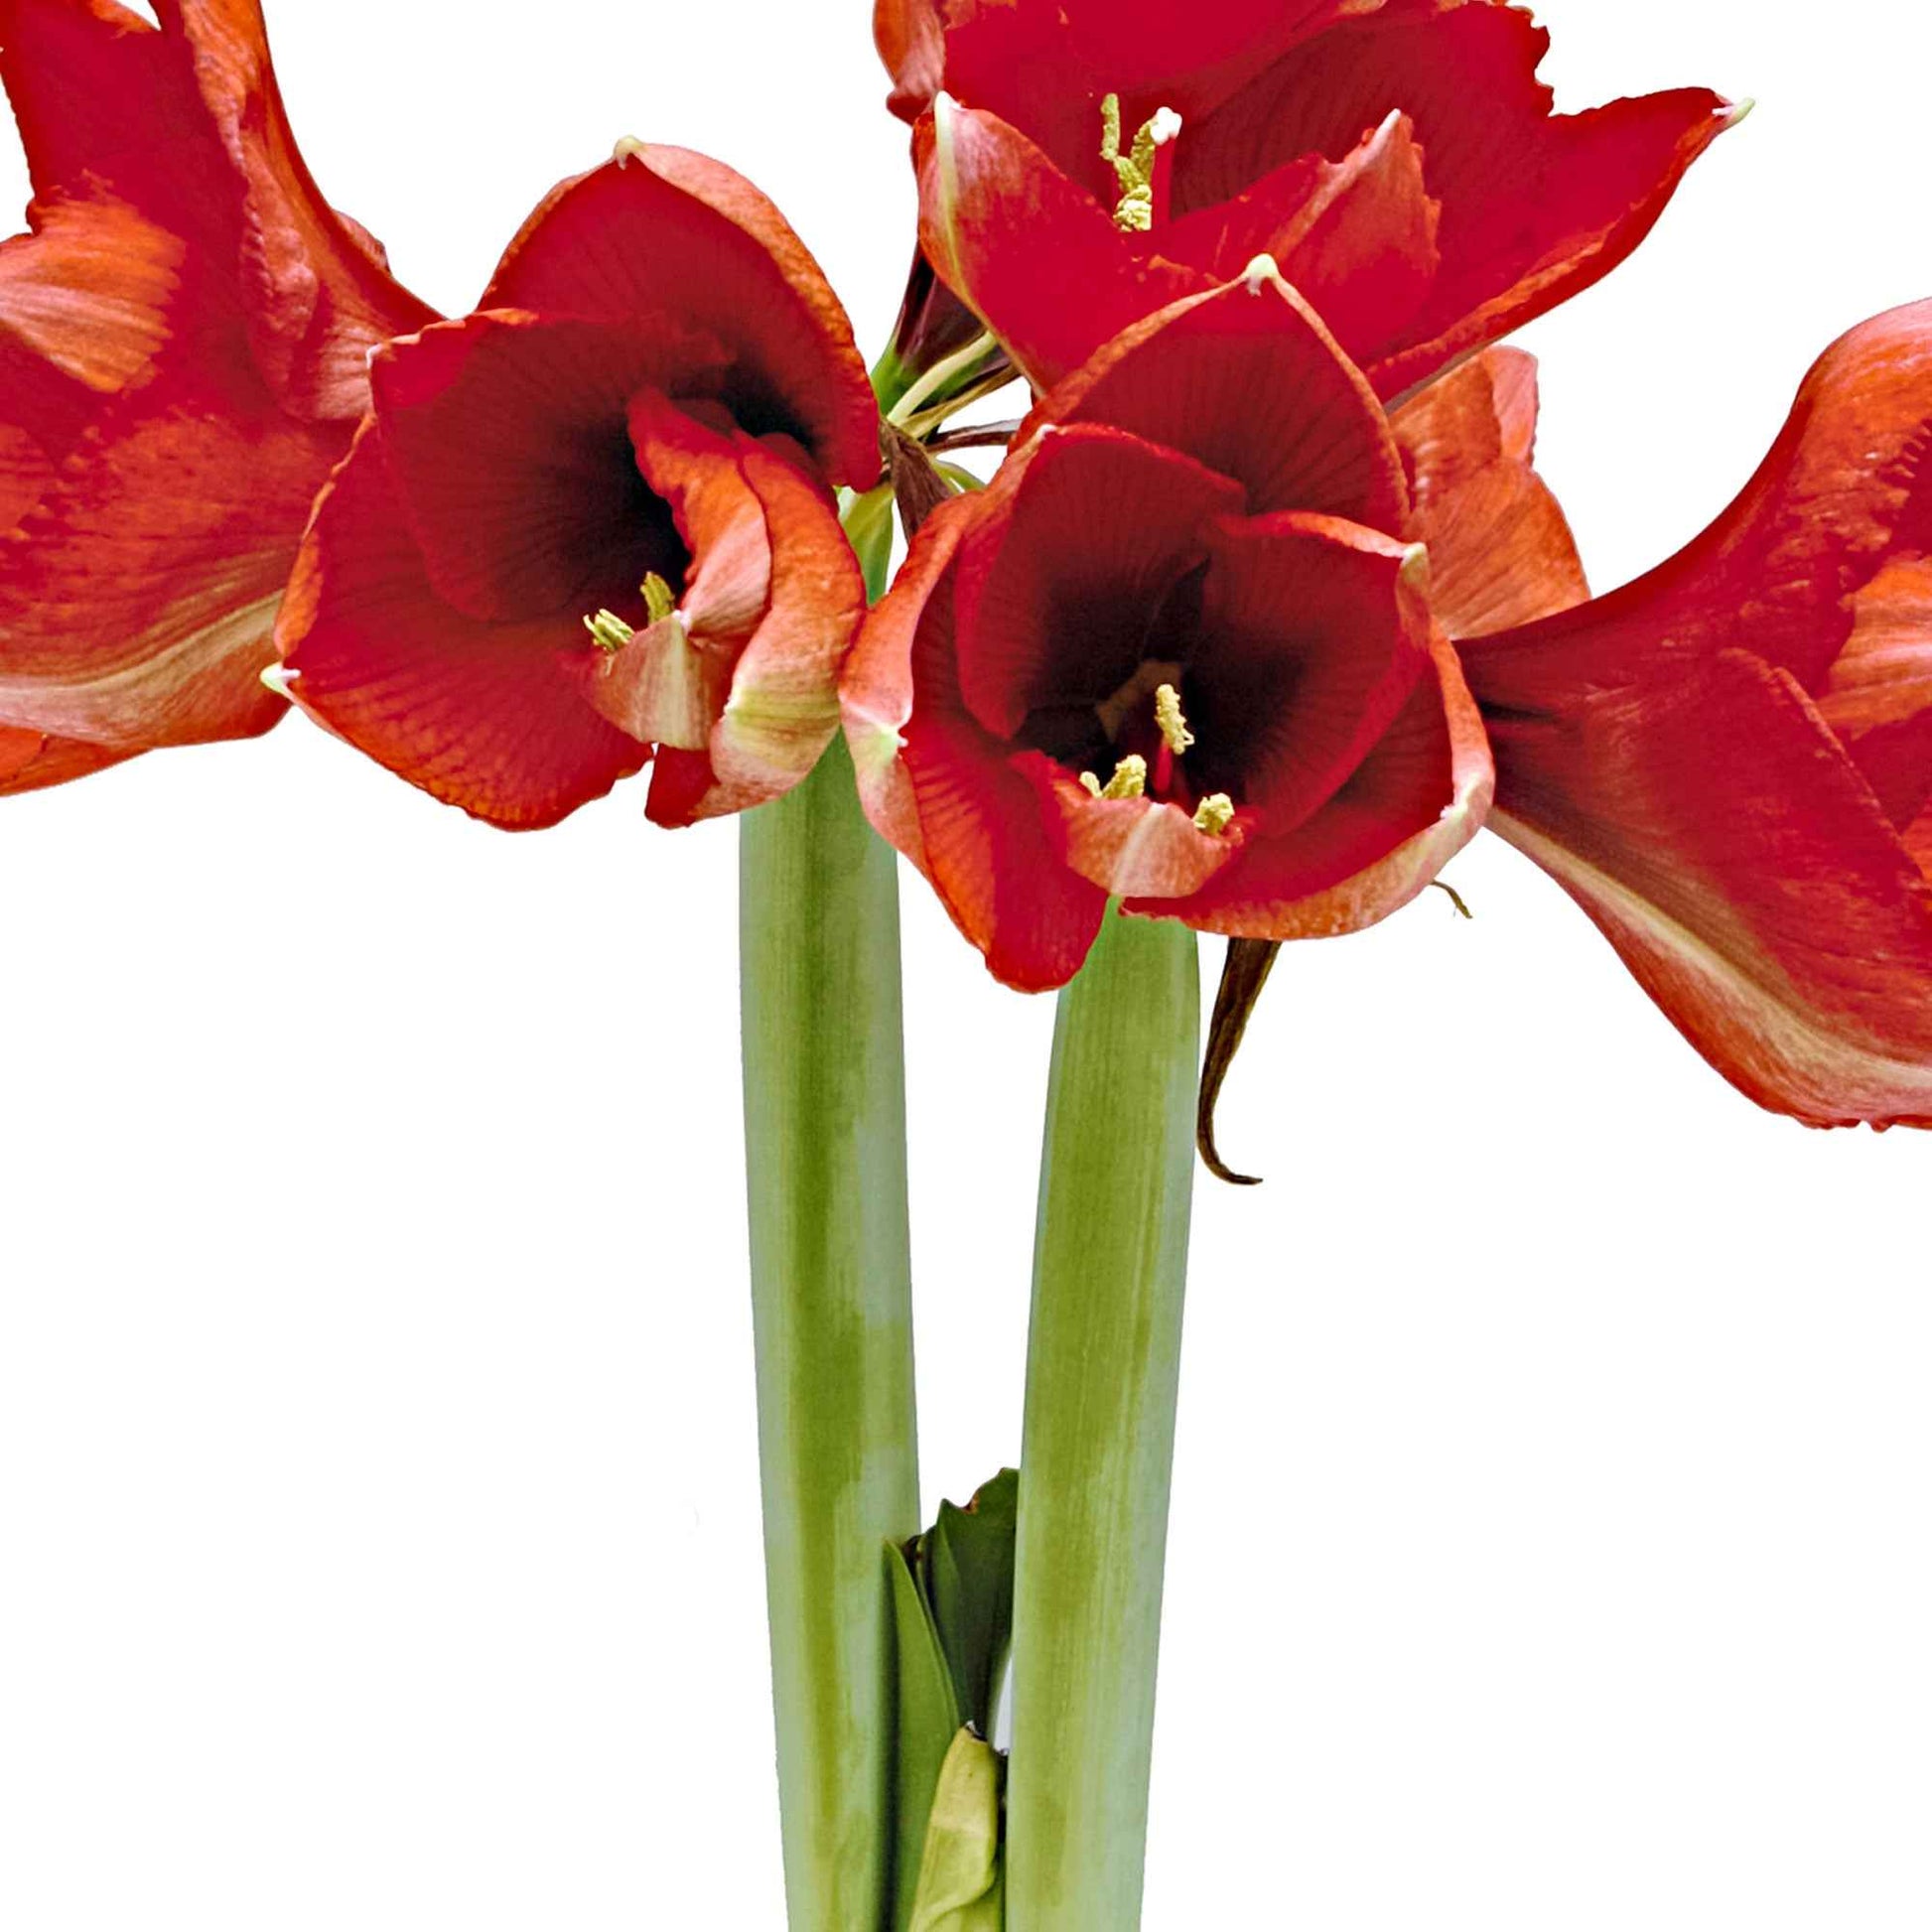 Wax amaryllis 'Rembrandt' or - Bulbes de fleurs populaires